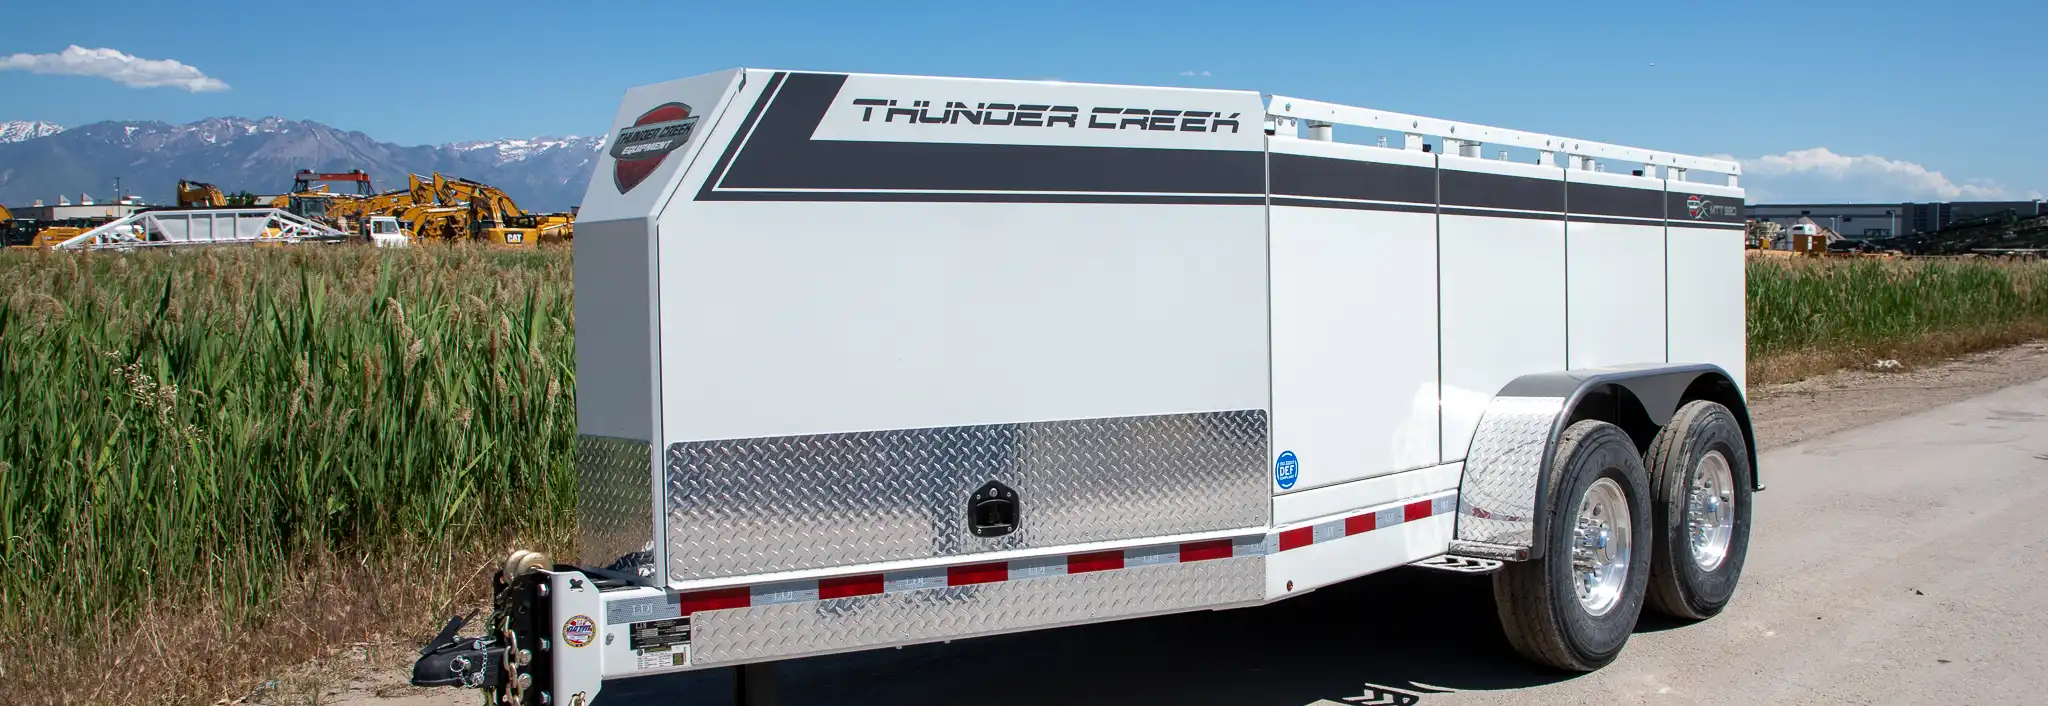 Thunder creek trailer